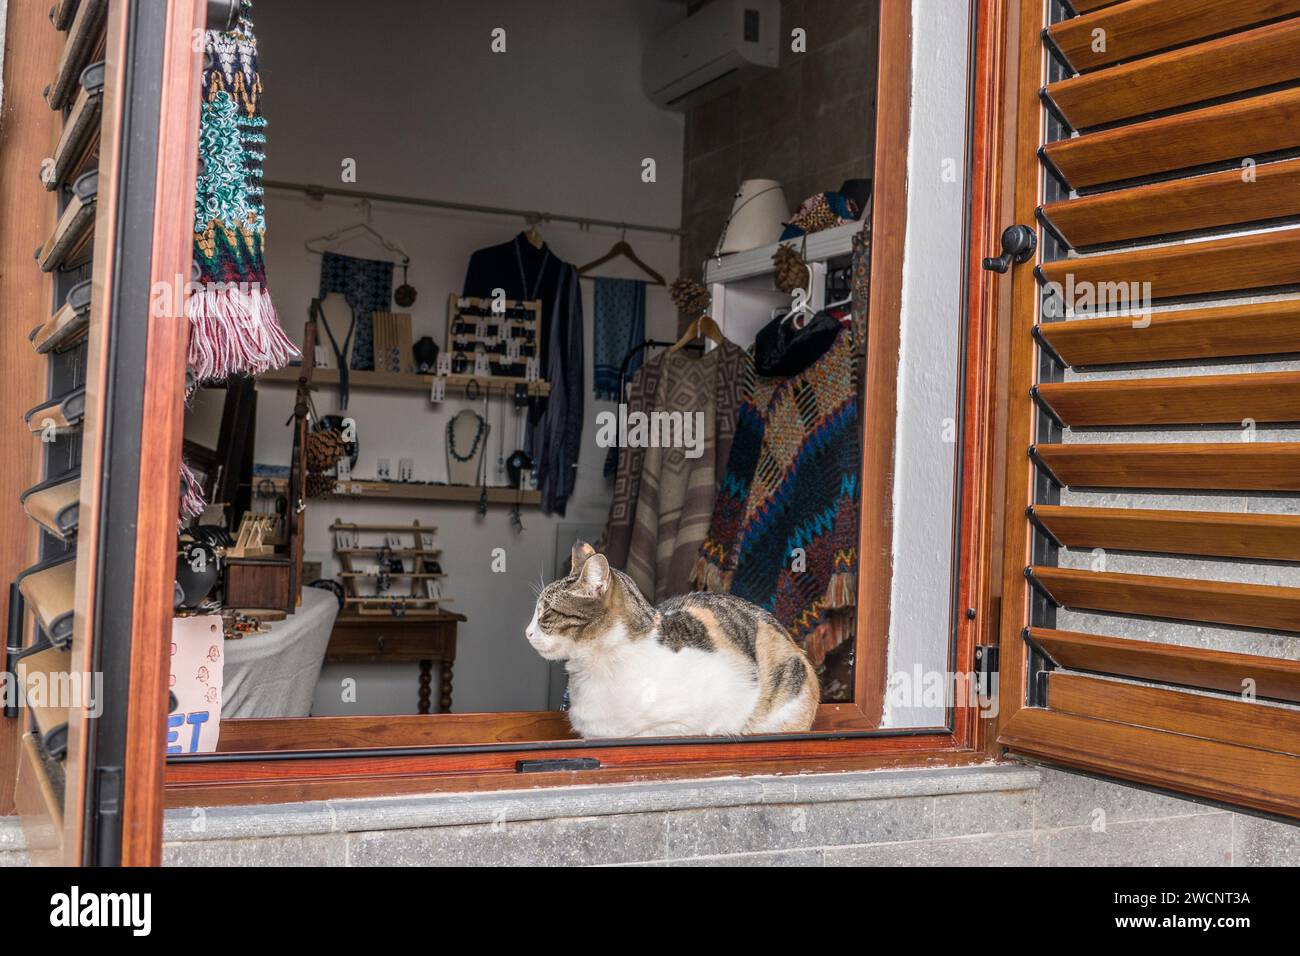 Katze schläft auf der Festerbank eine Geschäfts mit Bekleidung und Accessoires, Fataga, Gran Canaria, Spanien Stock Photo